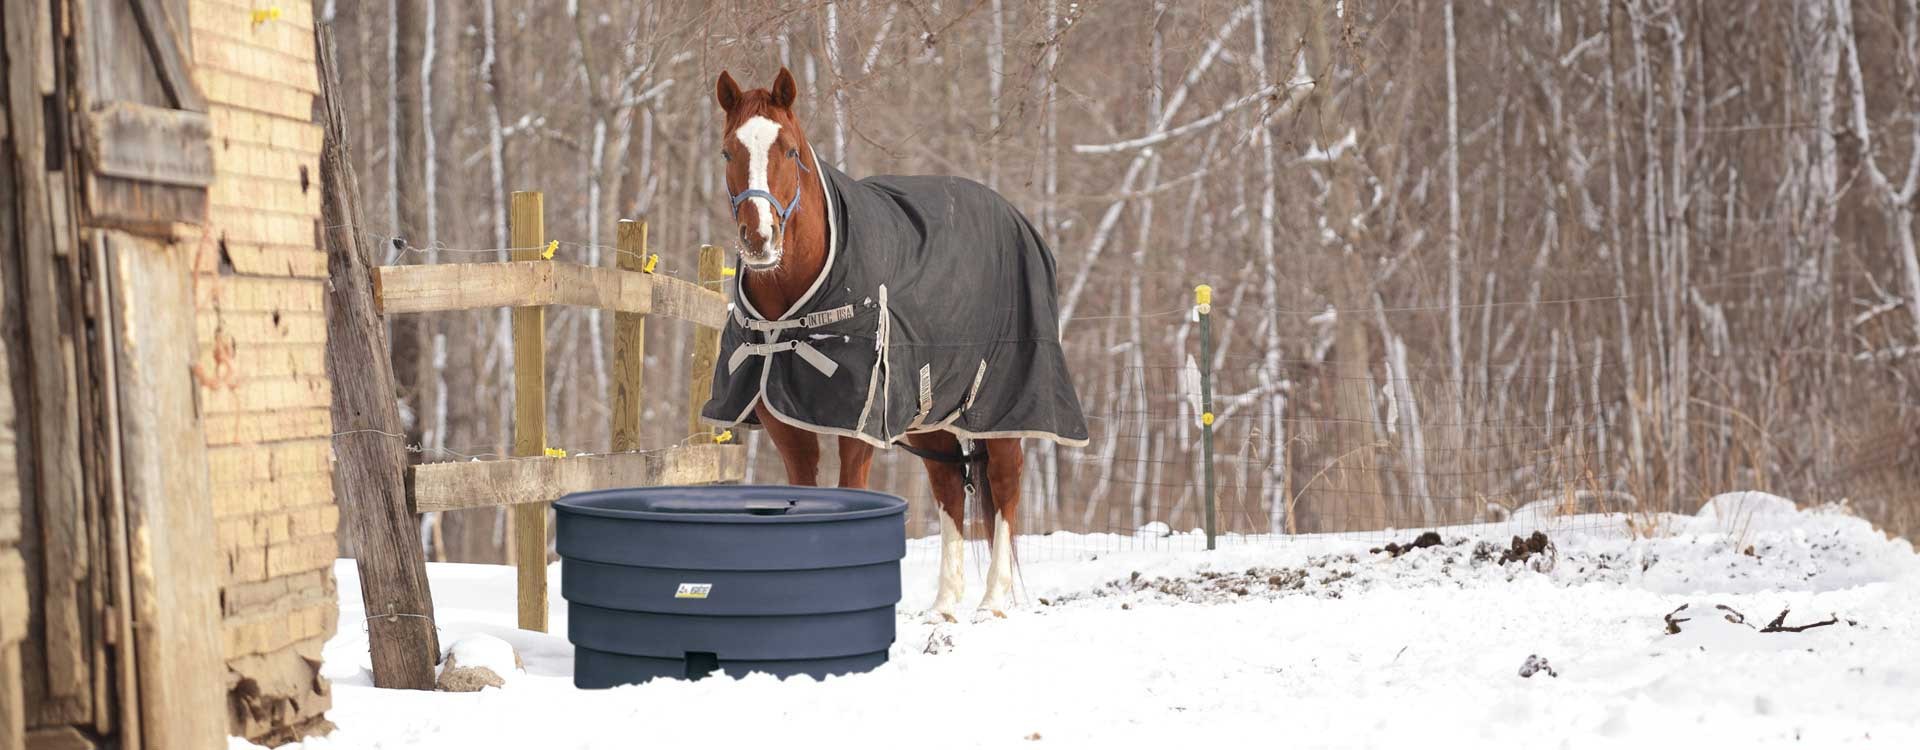 Quels sont les besoins en eau du cheval en hiver et quel abreuvoir antigel choisir ?